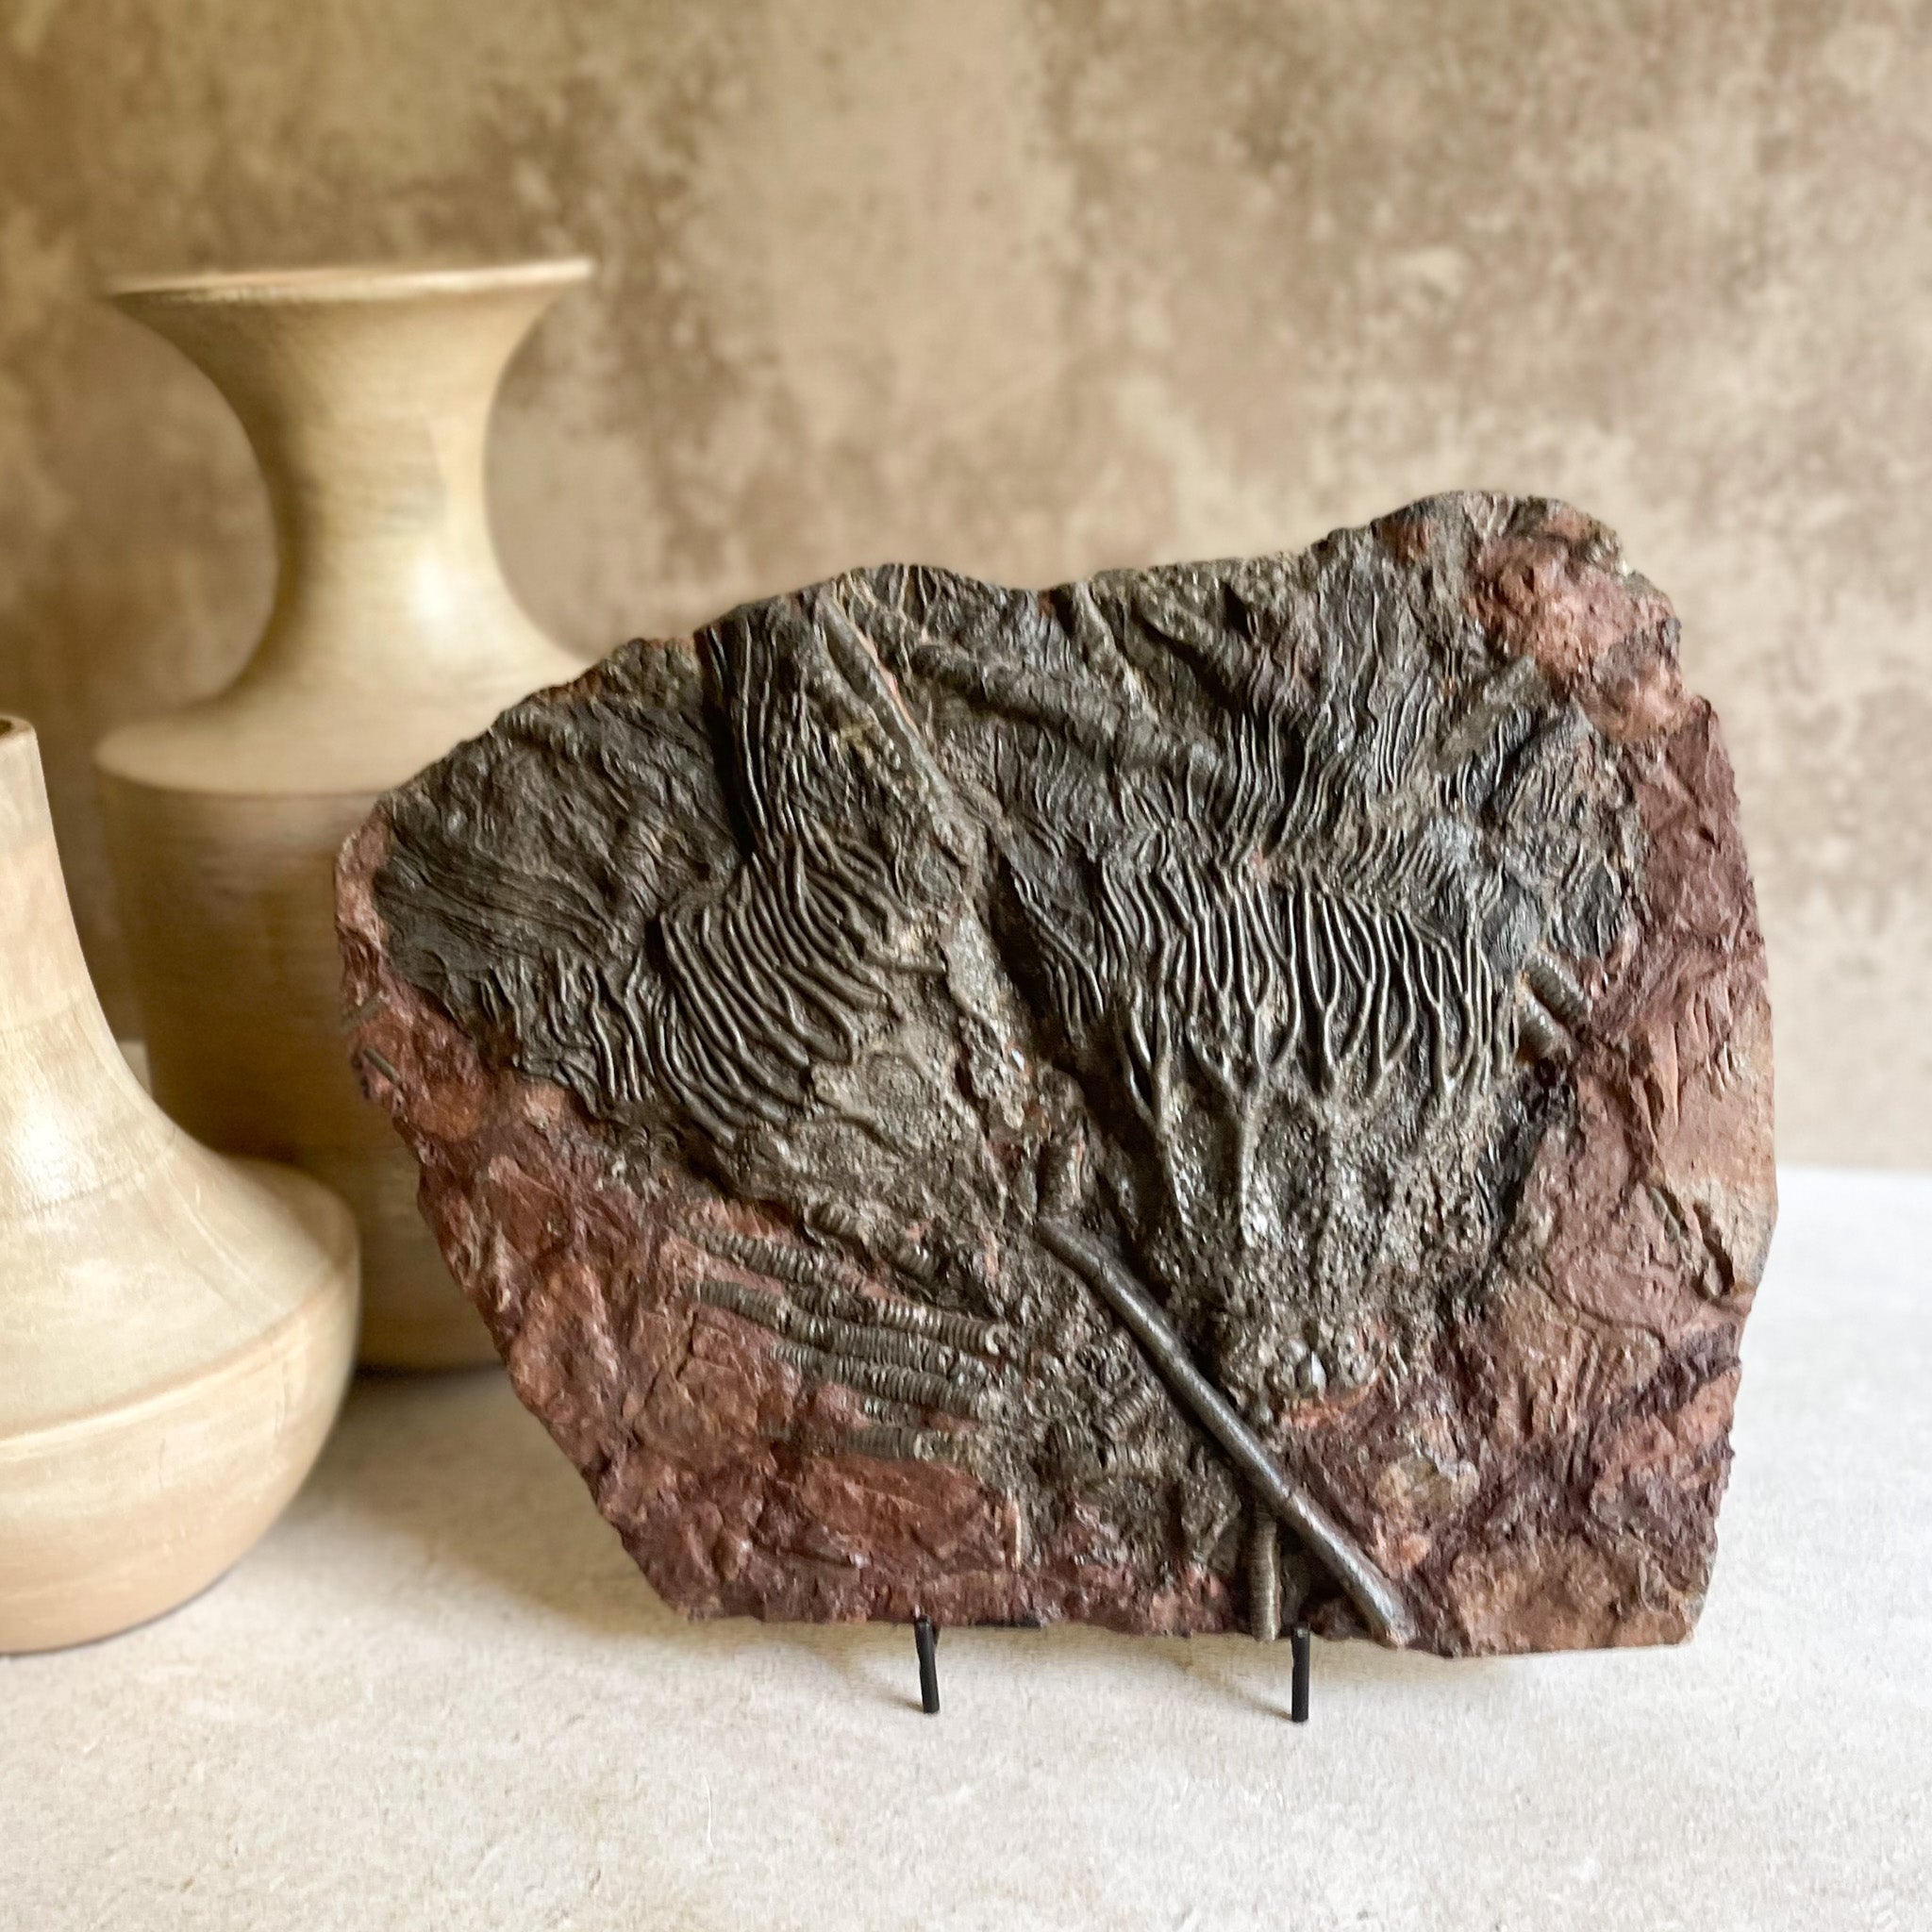 Moroccan Crinoid Fossil, Fossil Decor